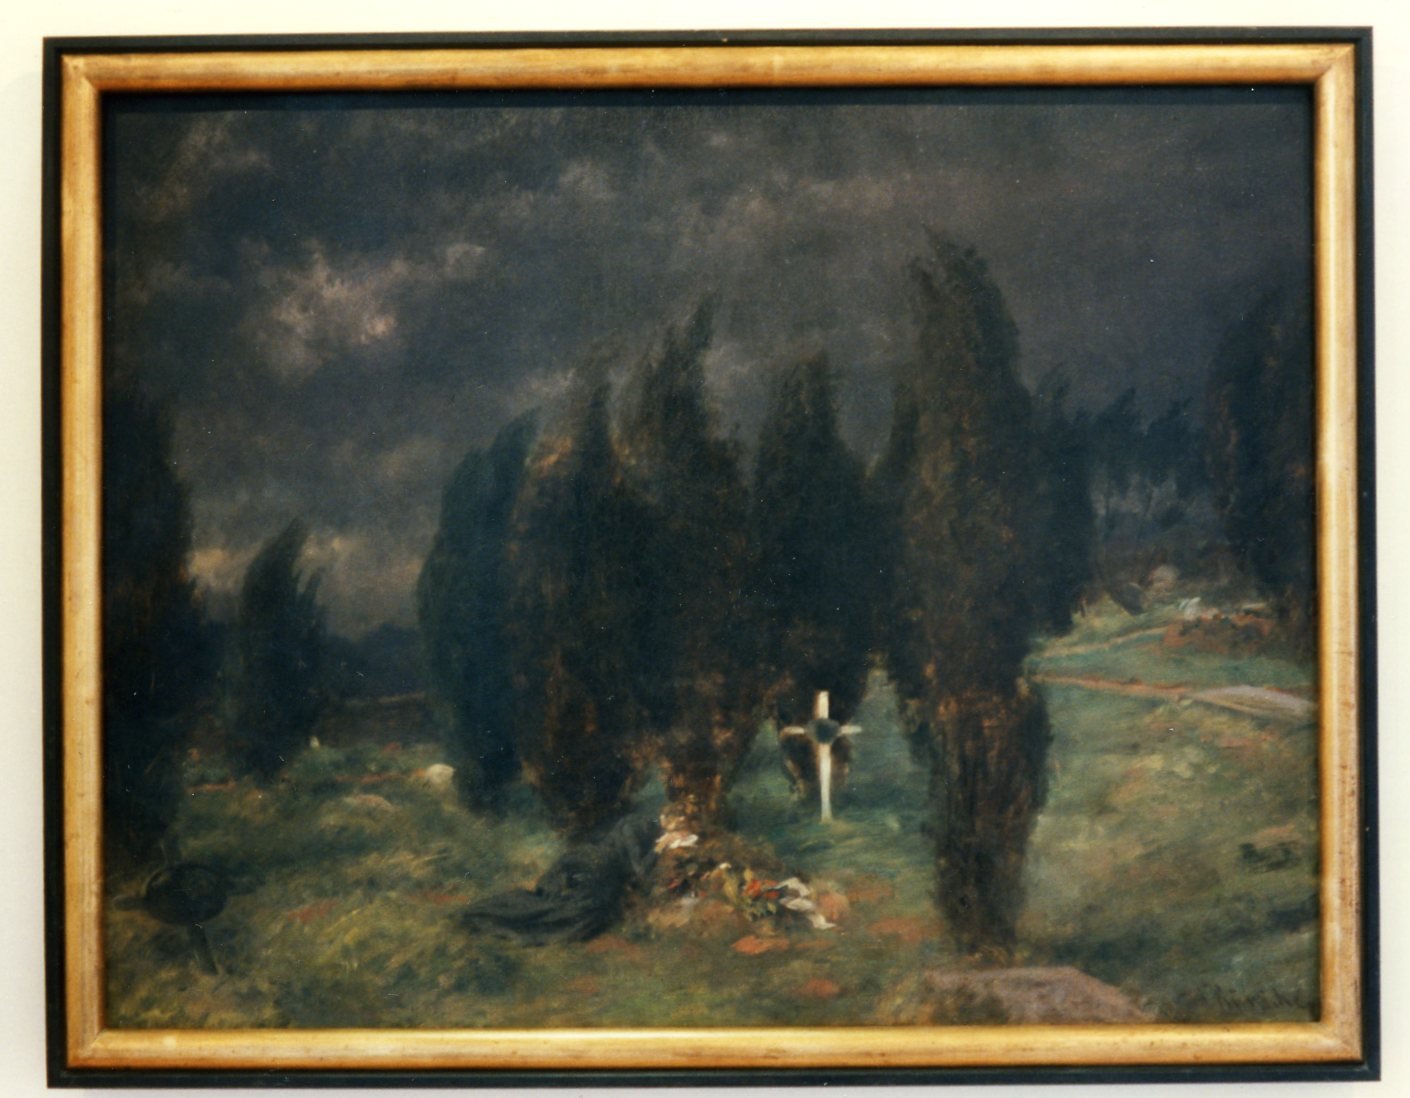 Gemälde 'Trauernde auf einem Friedhof' (August Künicke) (Museum für Sepulkralkultur CC0)